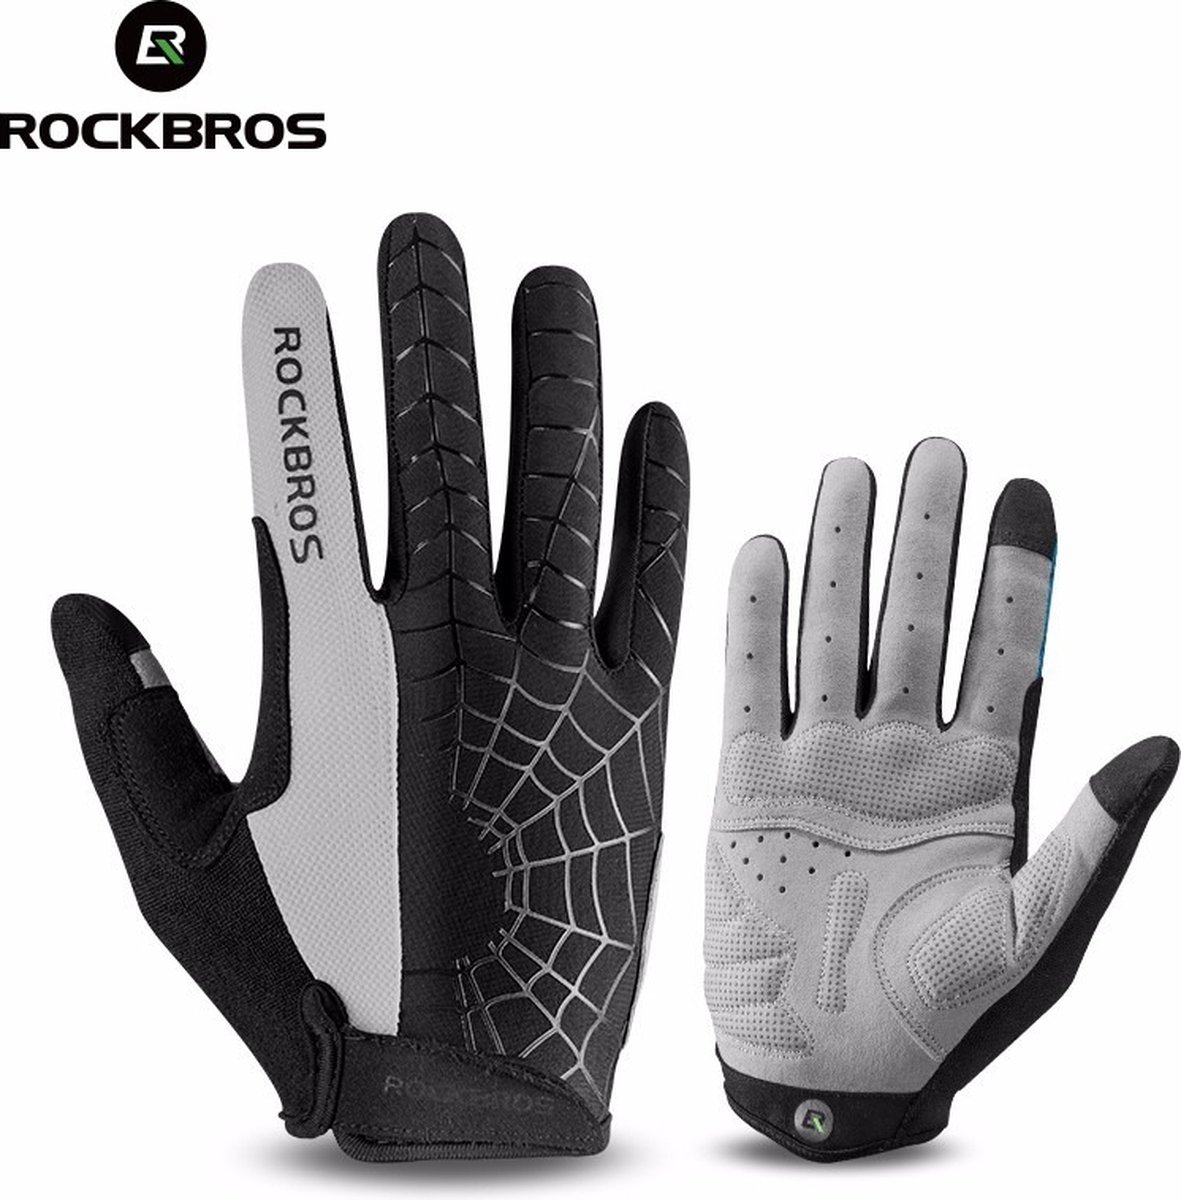 Rockbros fiets handschoenen met lange vingers S109 - S - Grijs